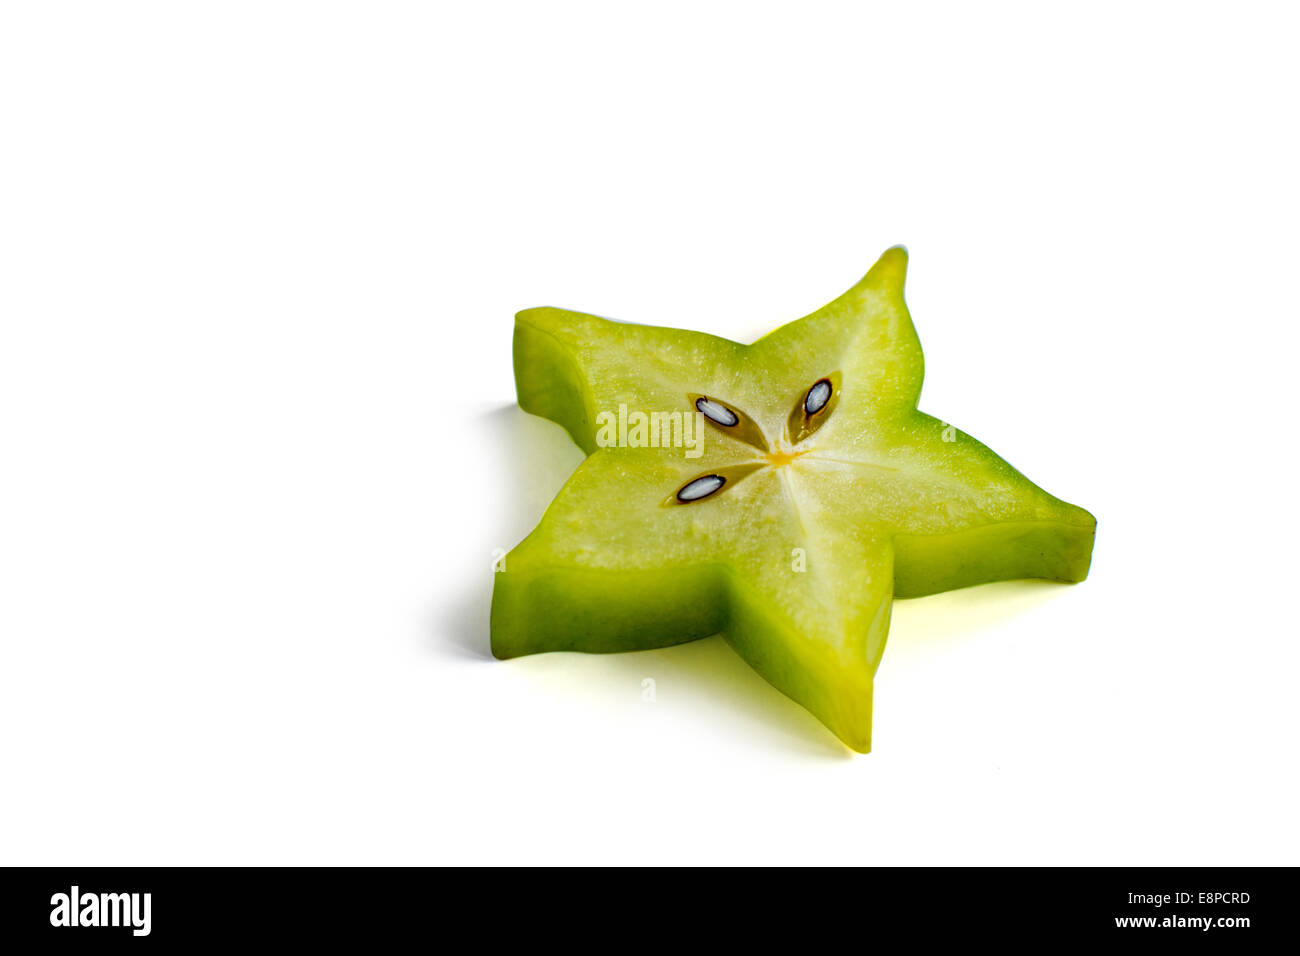 Carambole - starfruit on white background Stock Photo